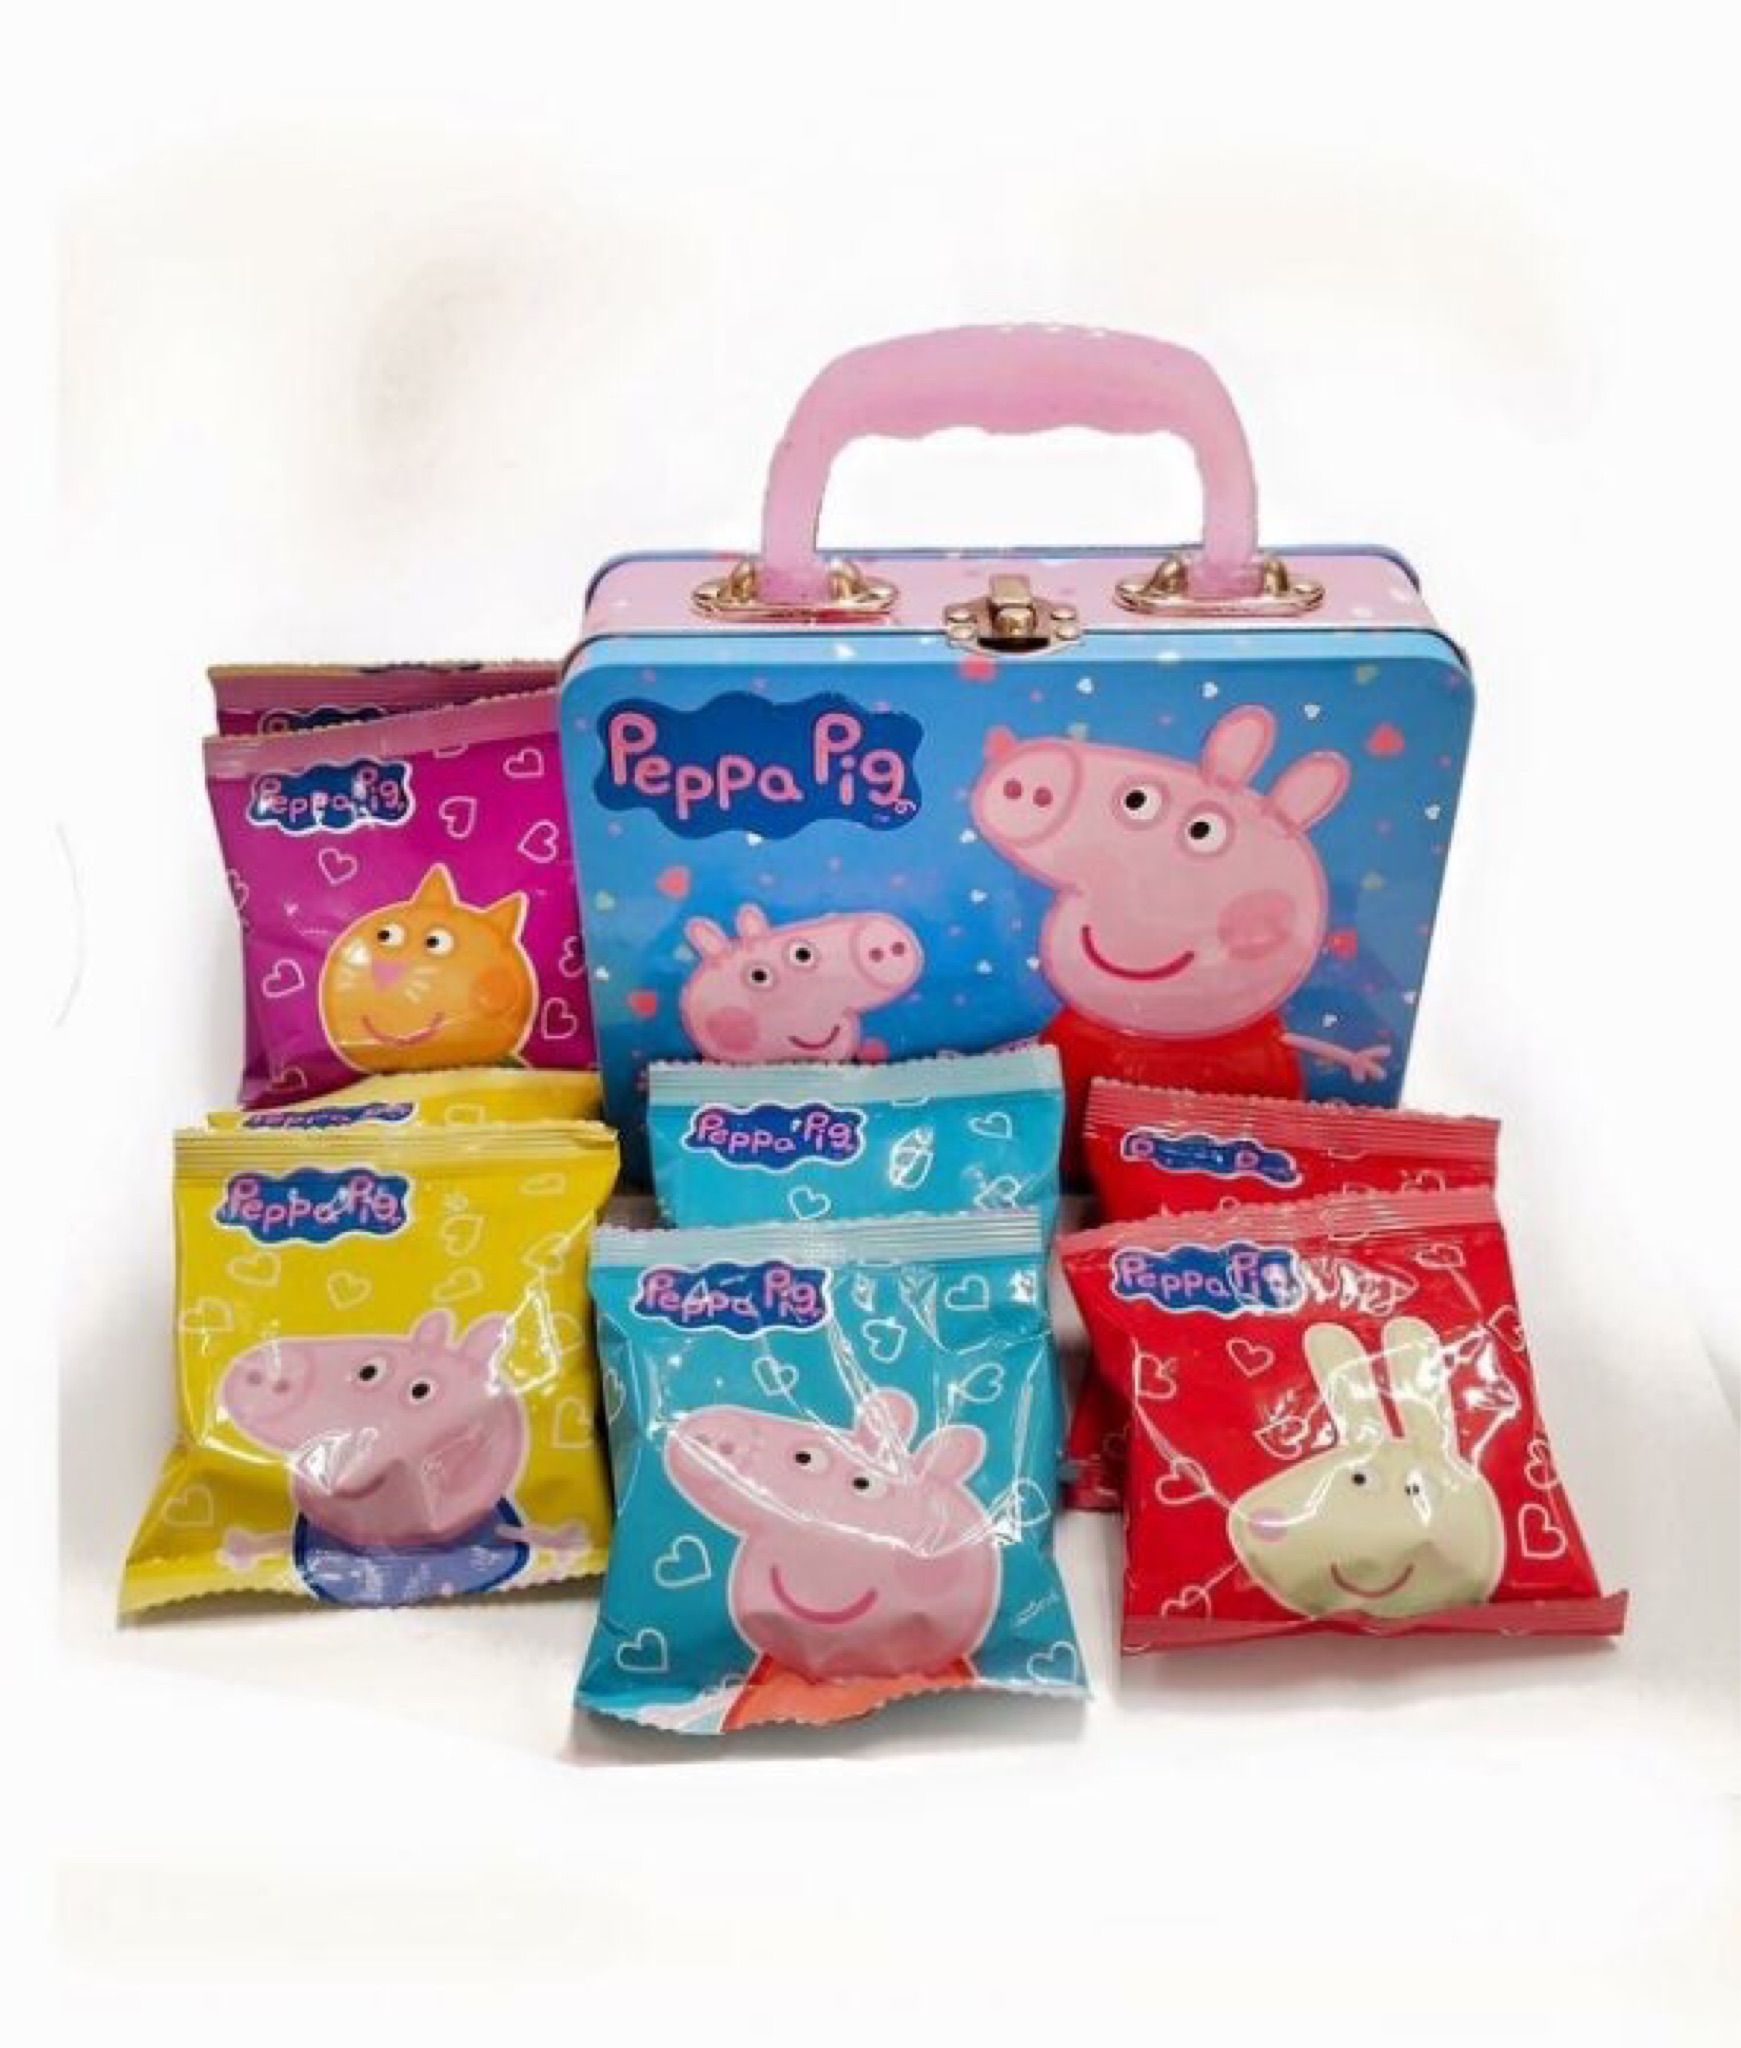 Peppa pig佩佩豬餅乾禮盒